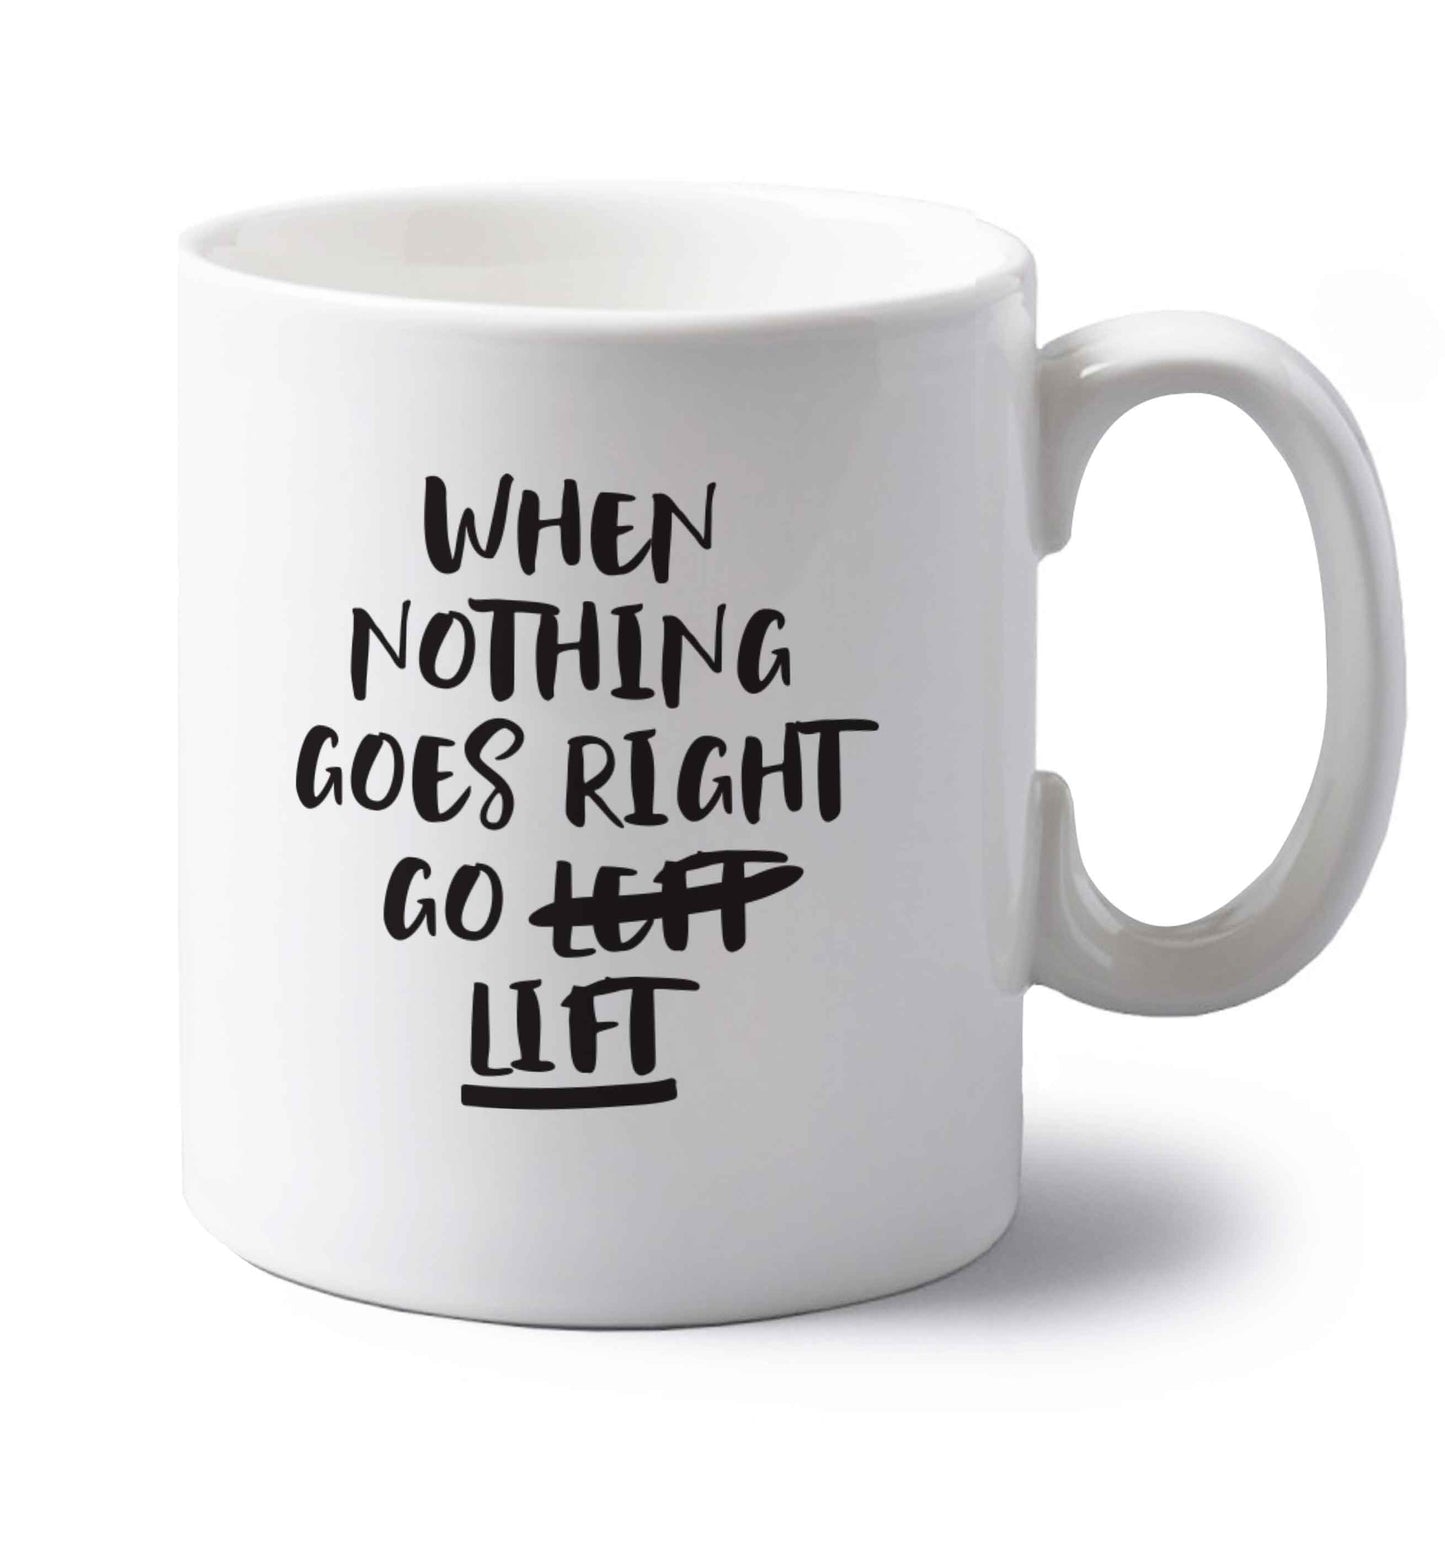 When nothing goes right go lift left handed white ceramic mug 